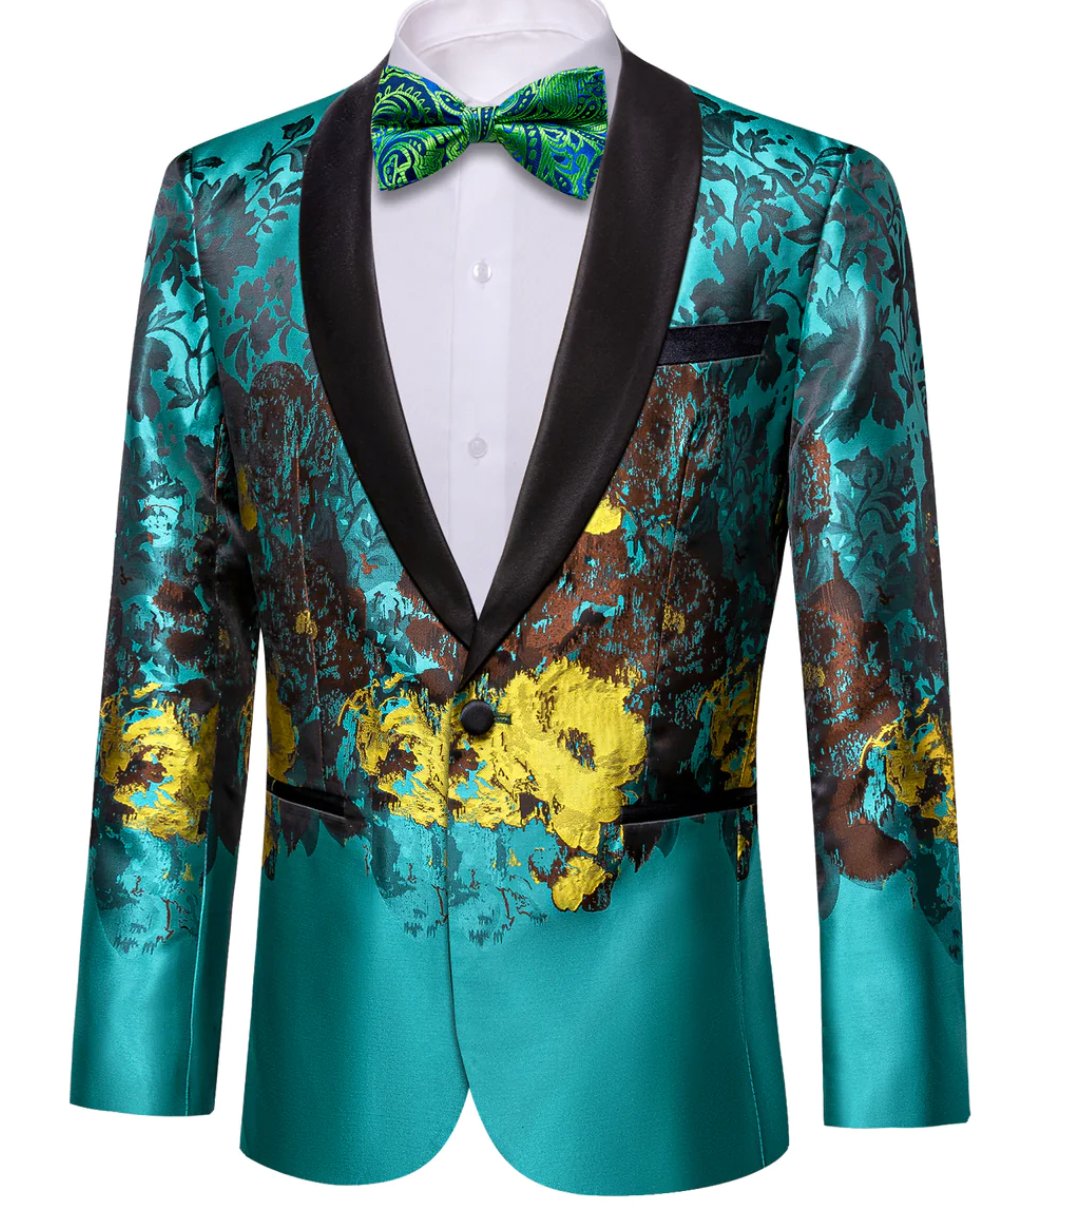 Men's Dress Party Blue Brown Floral Suit Jacket Slim One Button Stylish Blazer - XX - 0041 - SimonVon Shop